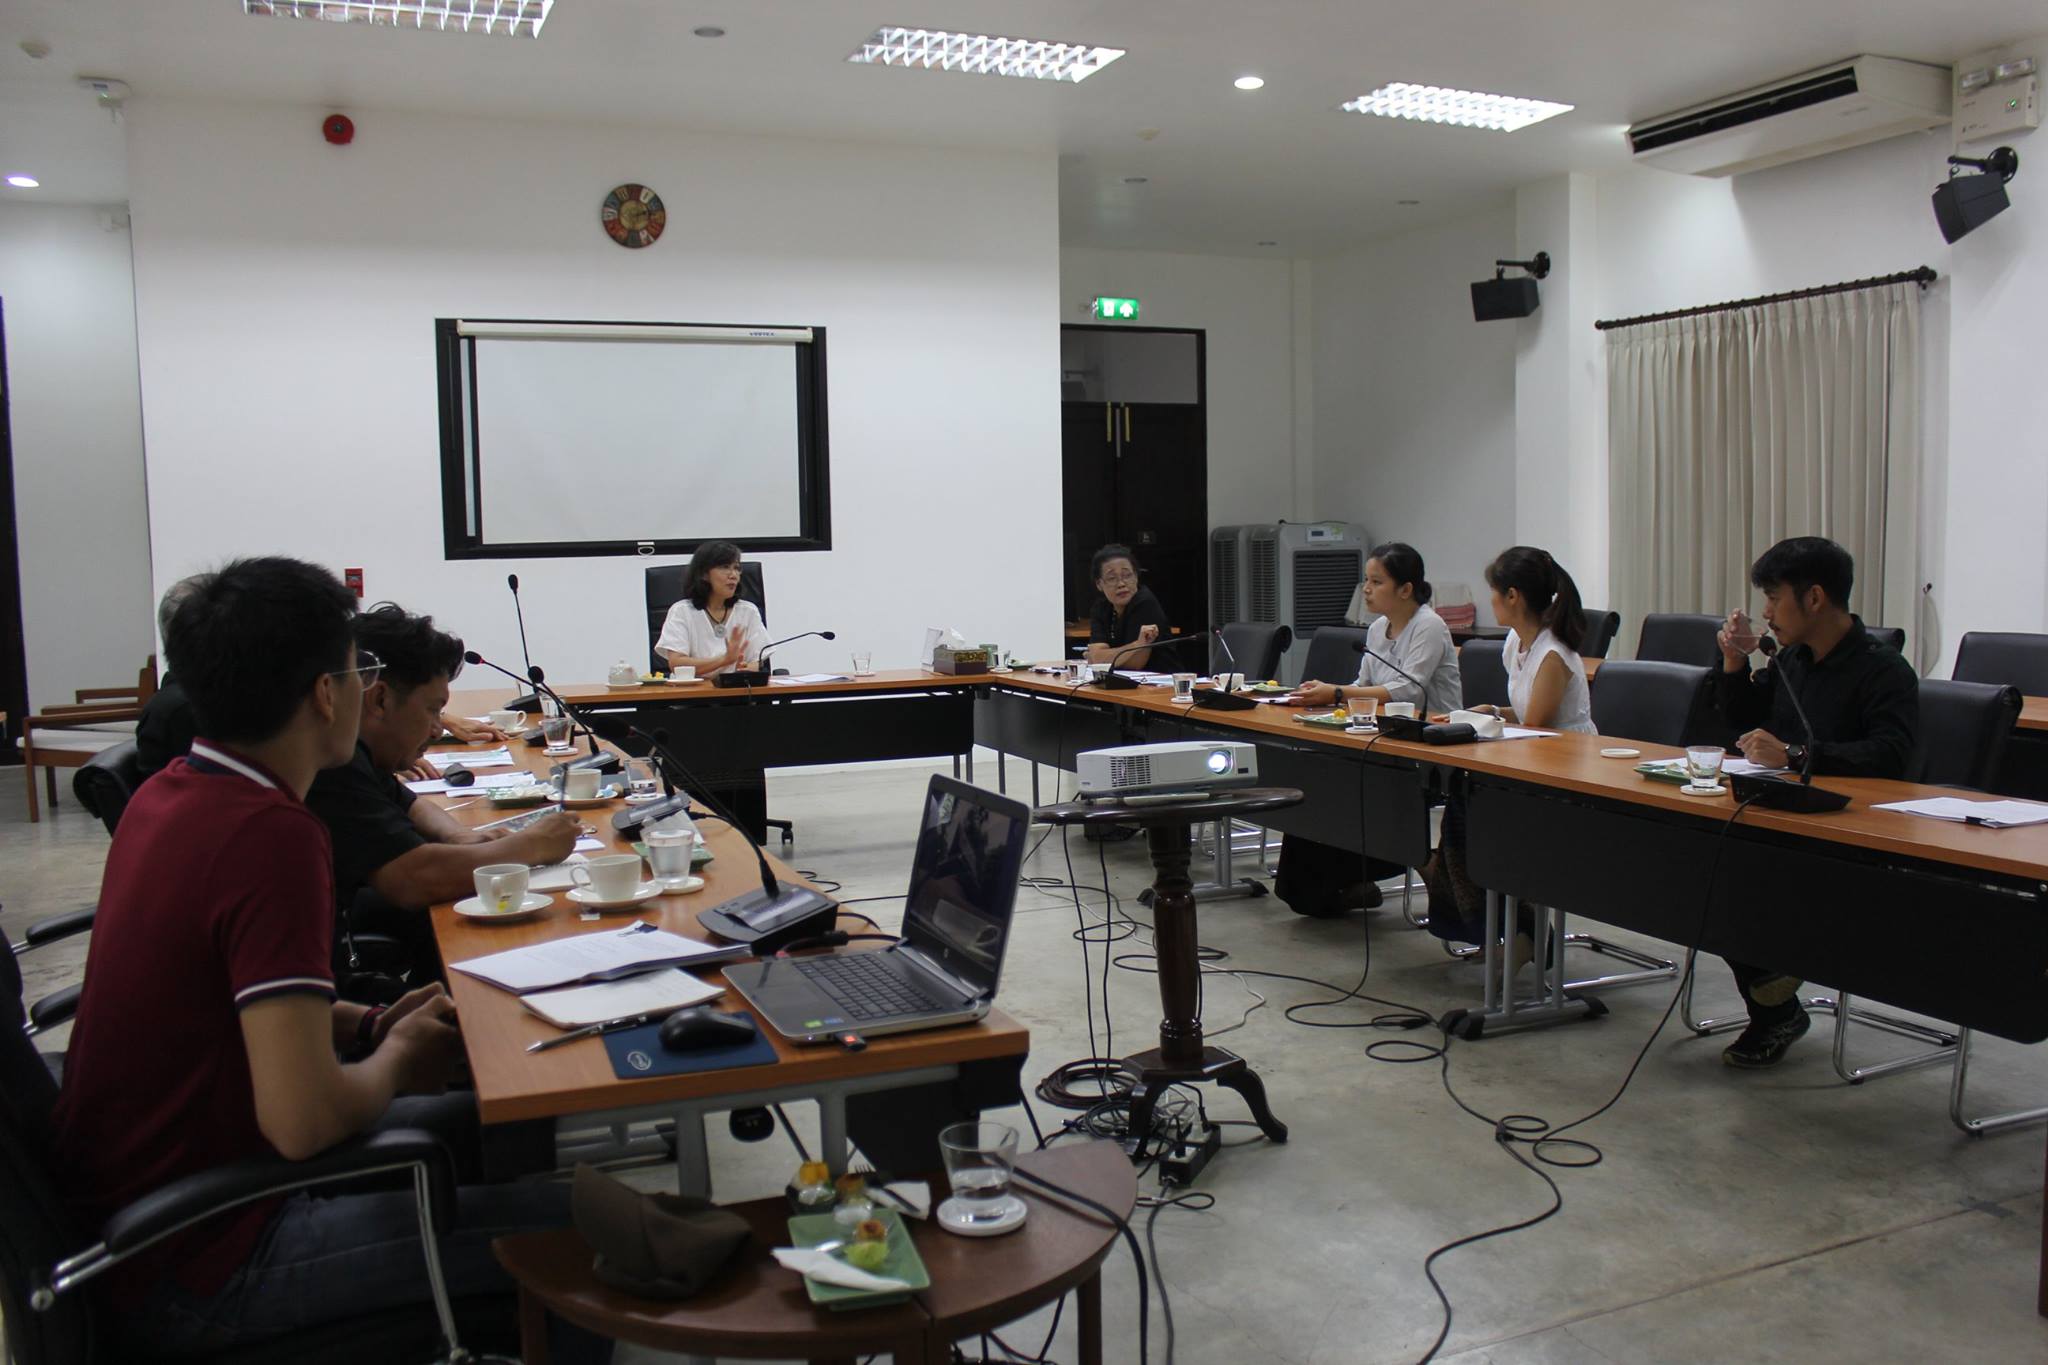 ประชุมคณะกรรมการตรวจรับพัสดุในโครงการอนุรักษ์หลองข้าวป่าซาง จังหวัดลำพูน ครั้งที่ 4/2560 เมื่อวันที่ 29 มิถุนายน 2560